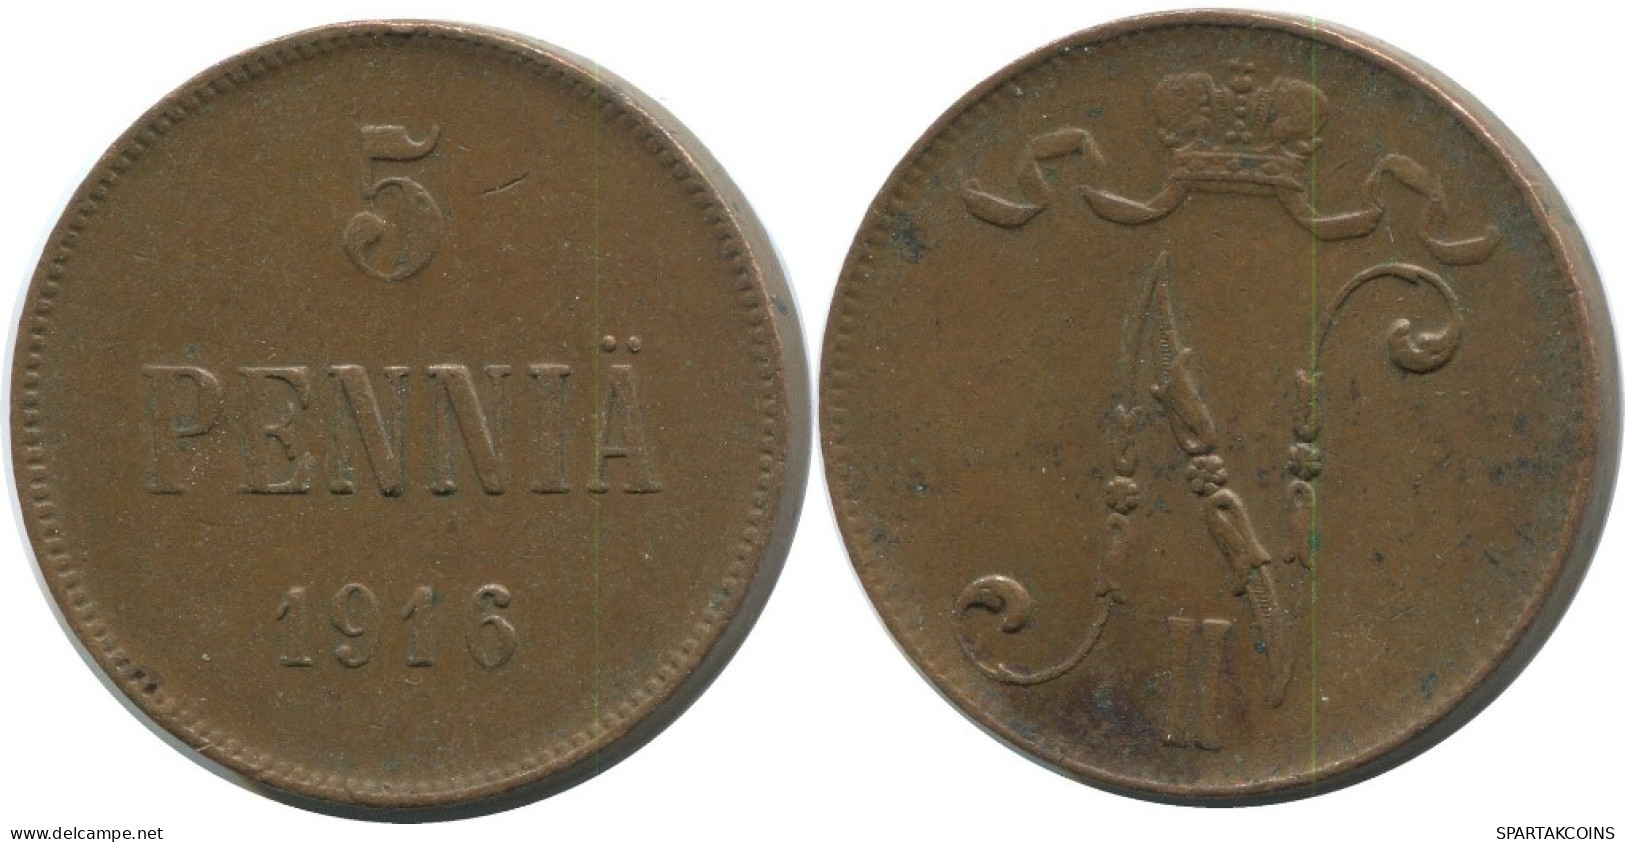 5 PENNIA 1916 FINLAND Coin RUSSIA EMPIRE #AB132.5.U.A - Finland